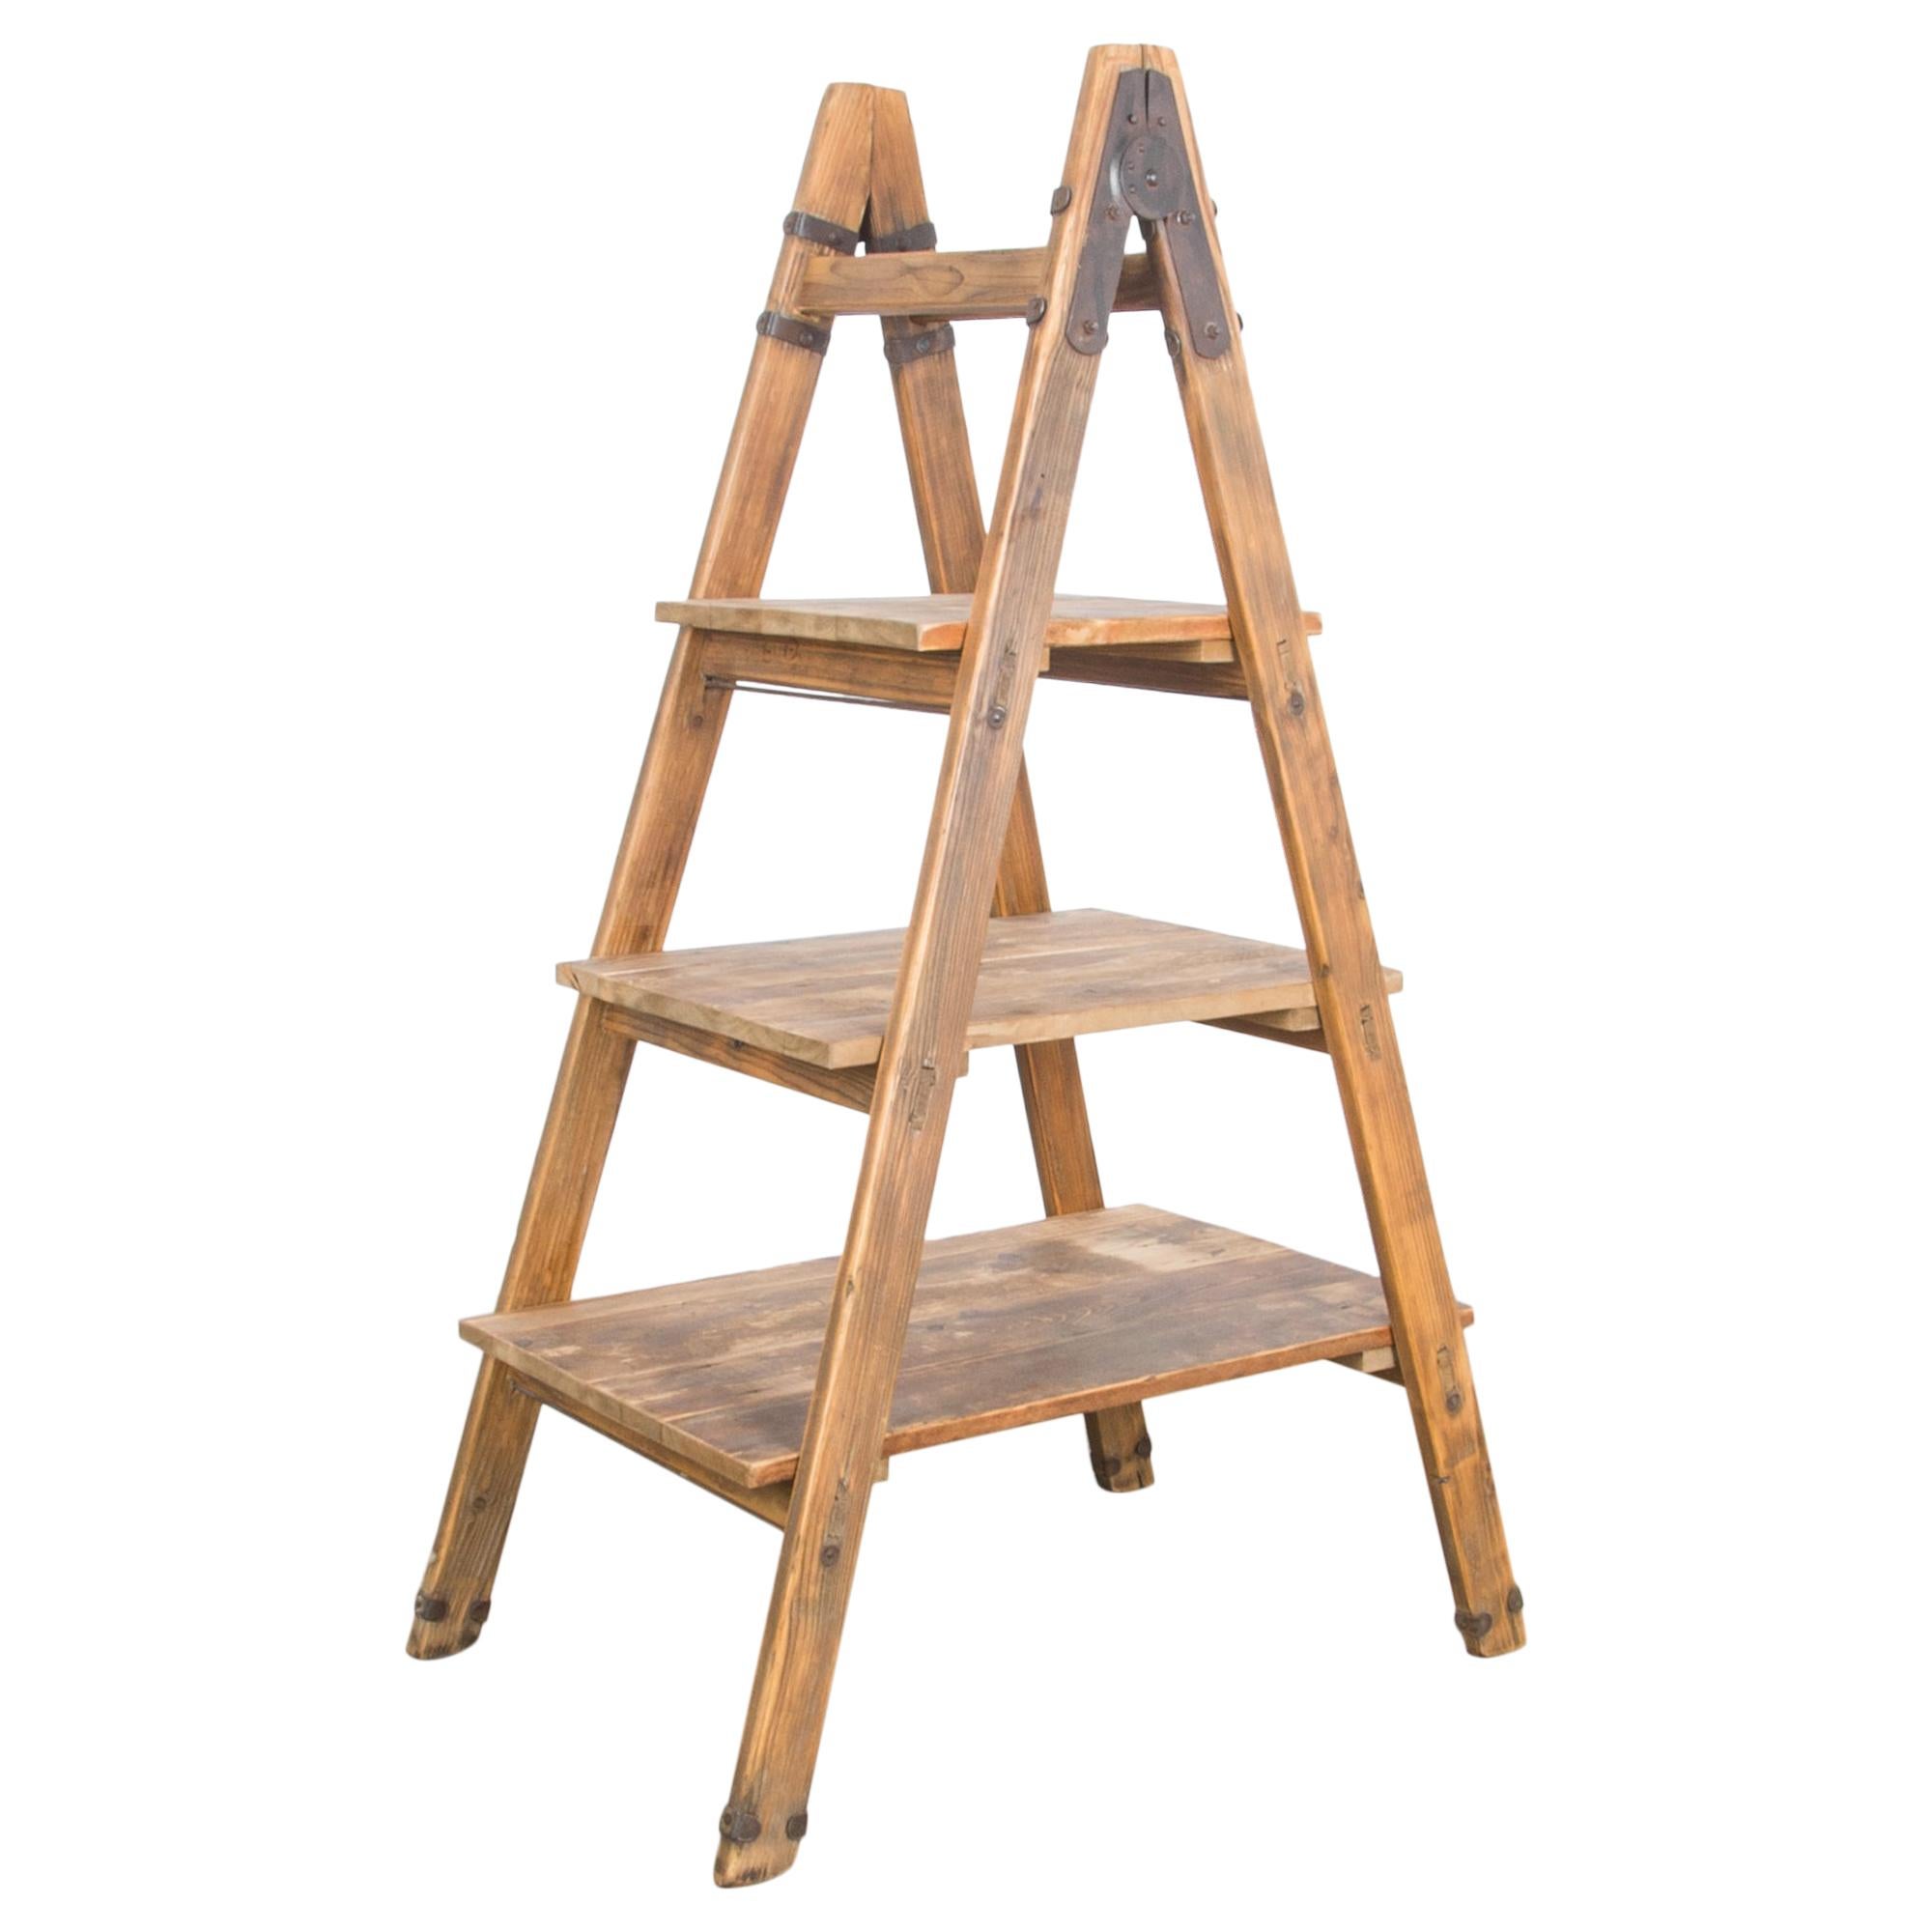 1940s Vintage Wooden Ladder Shelf